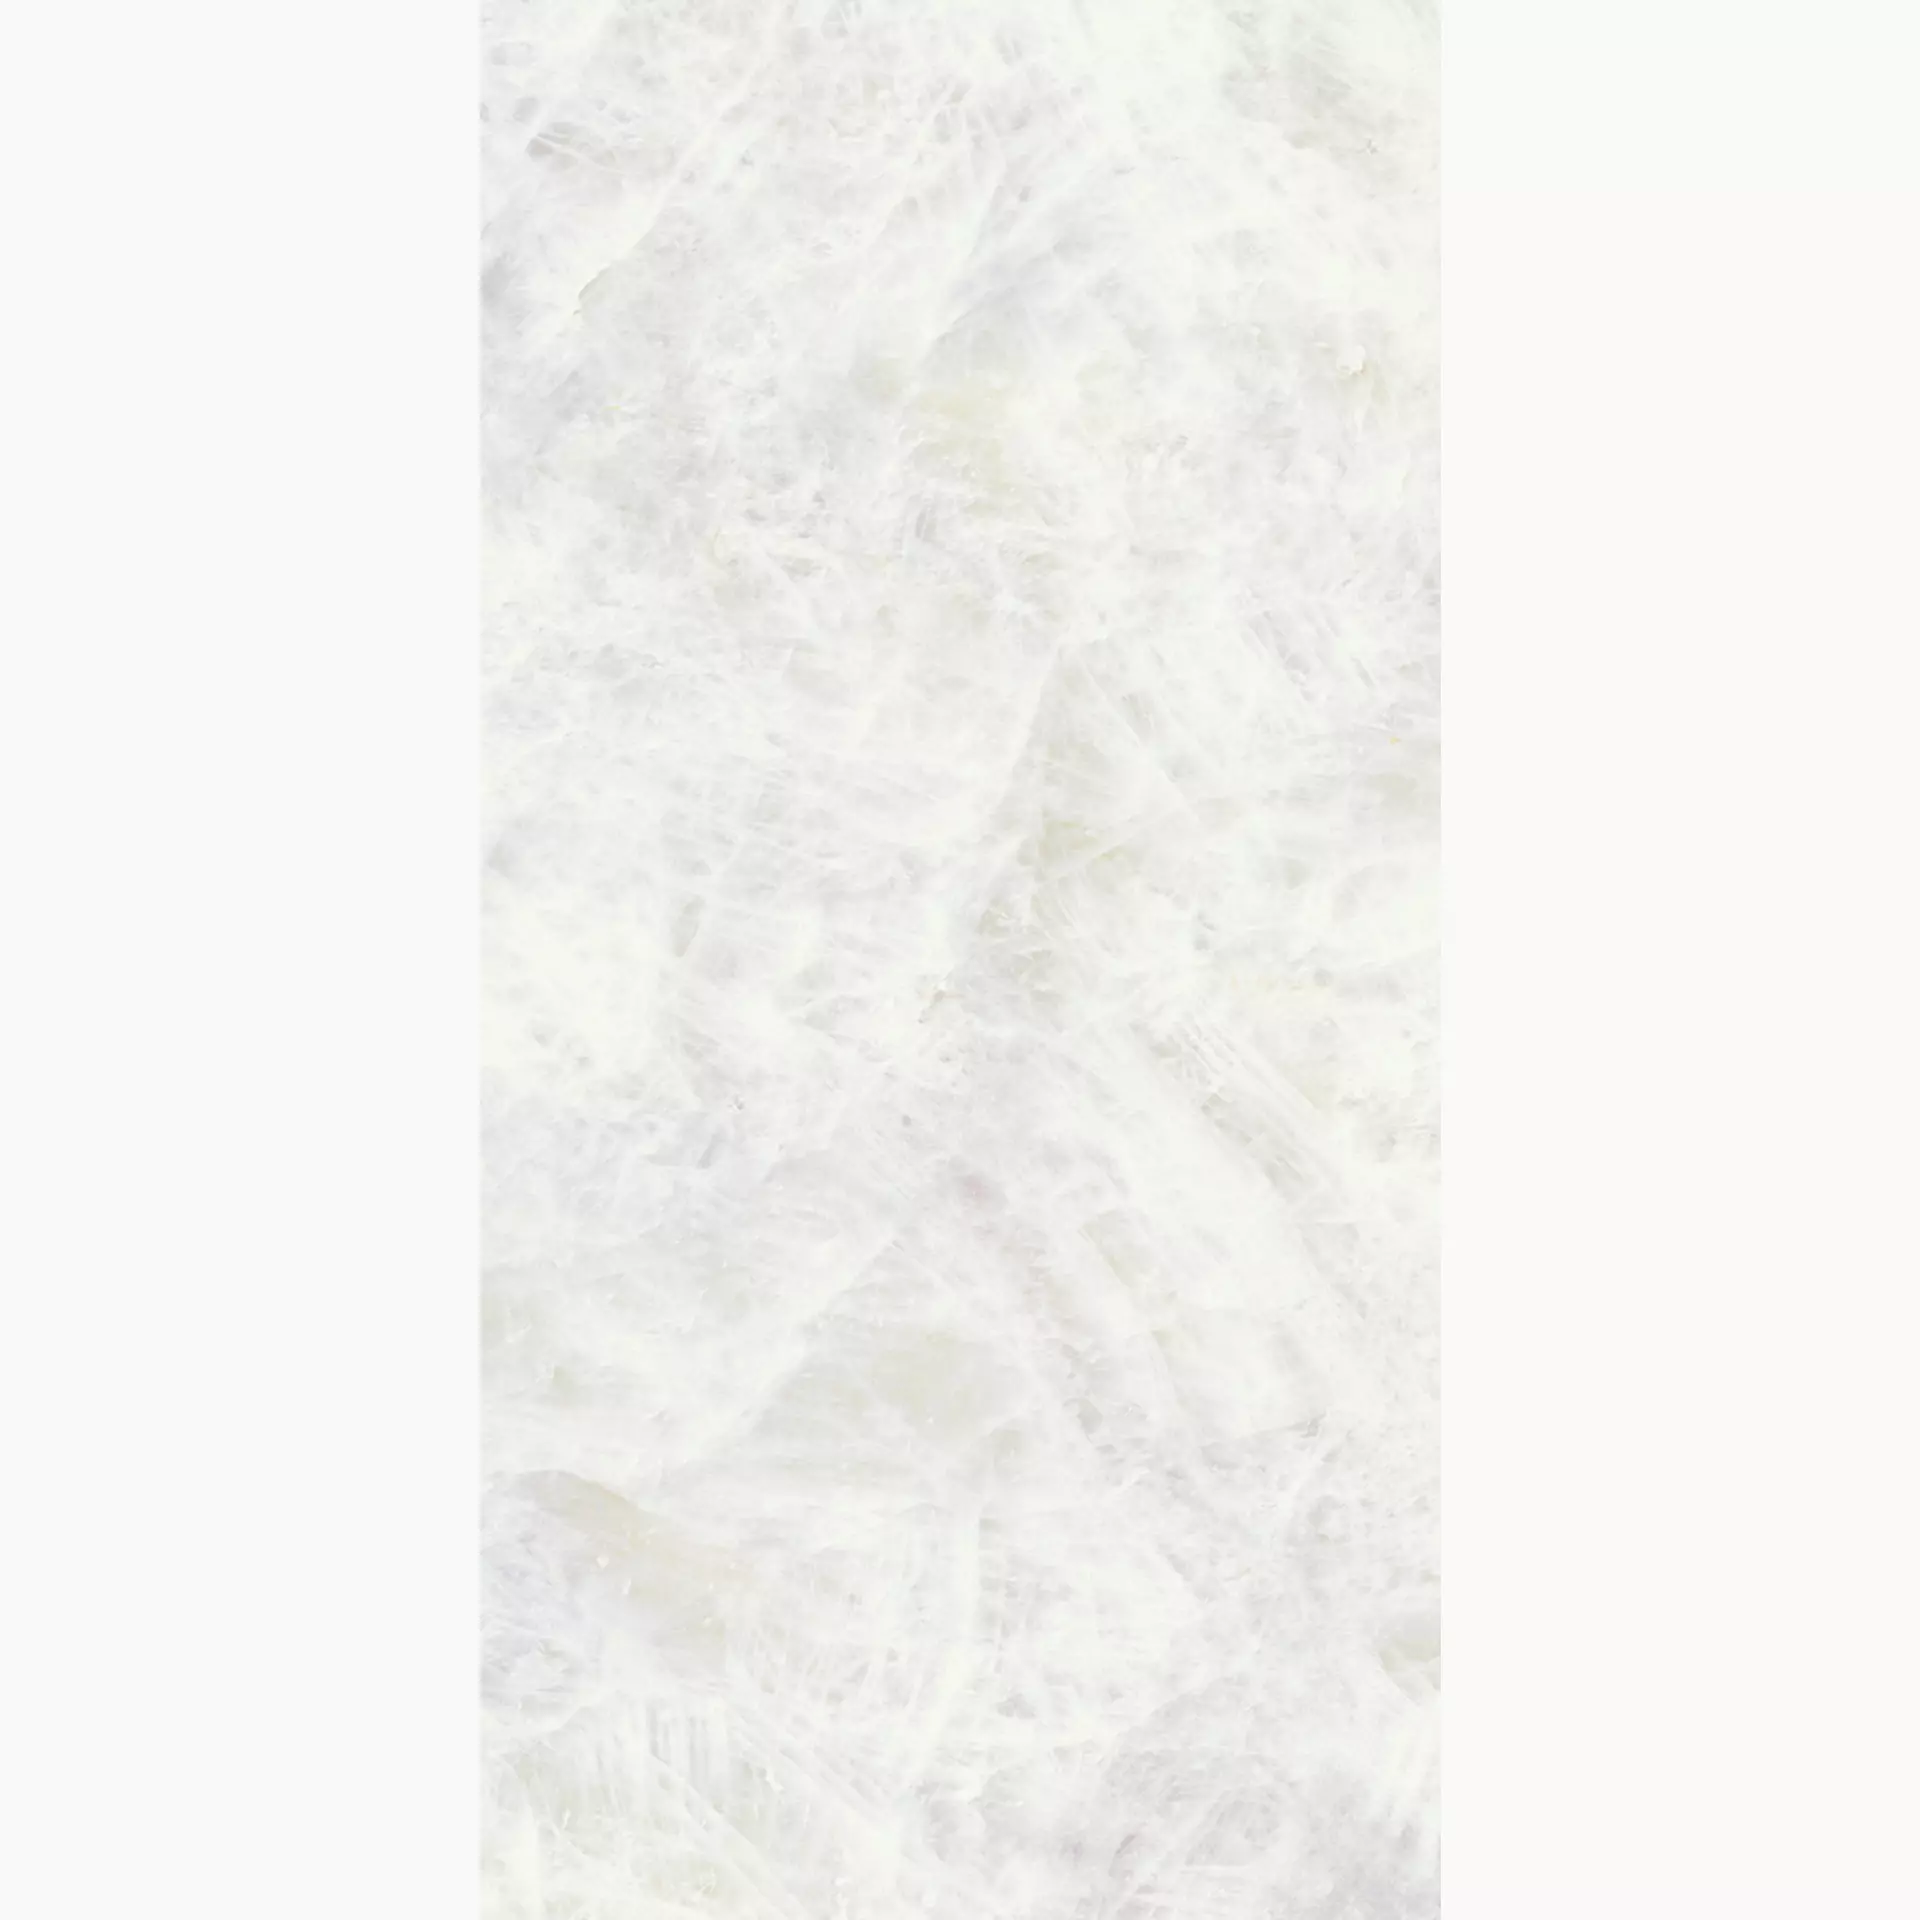 Emilceramica Tele Di Marmo Precious Crystal White Full Lappato ELV3 90x180cm rectified 10mm